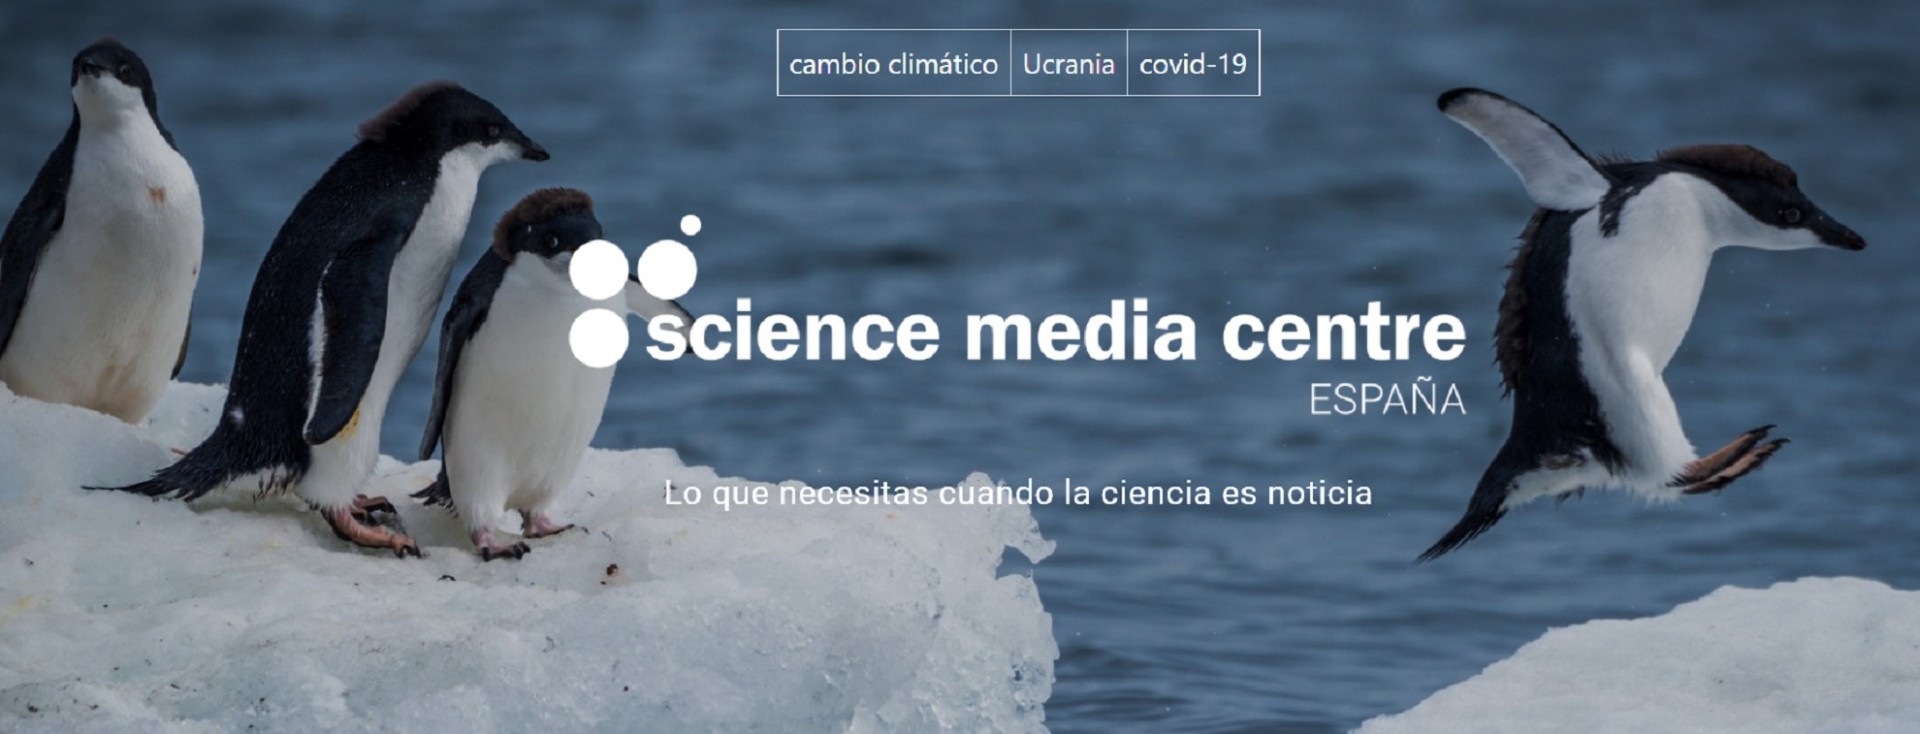 FECYT crea un Science Media Centre en España